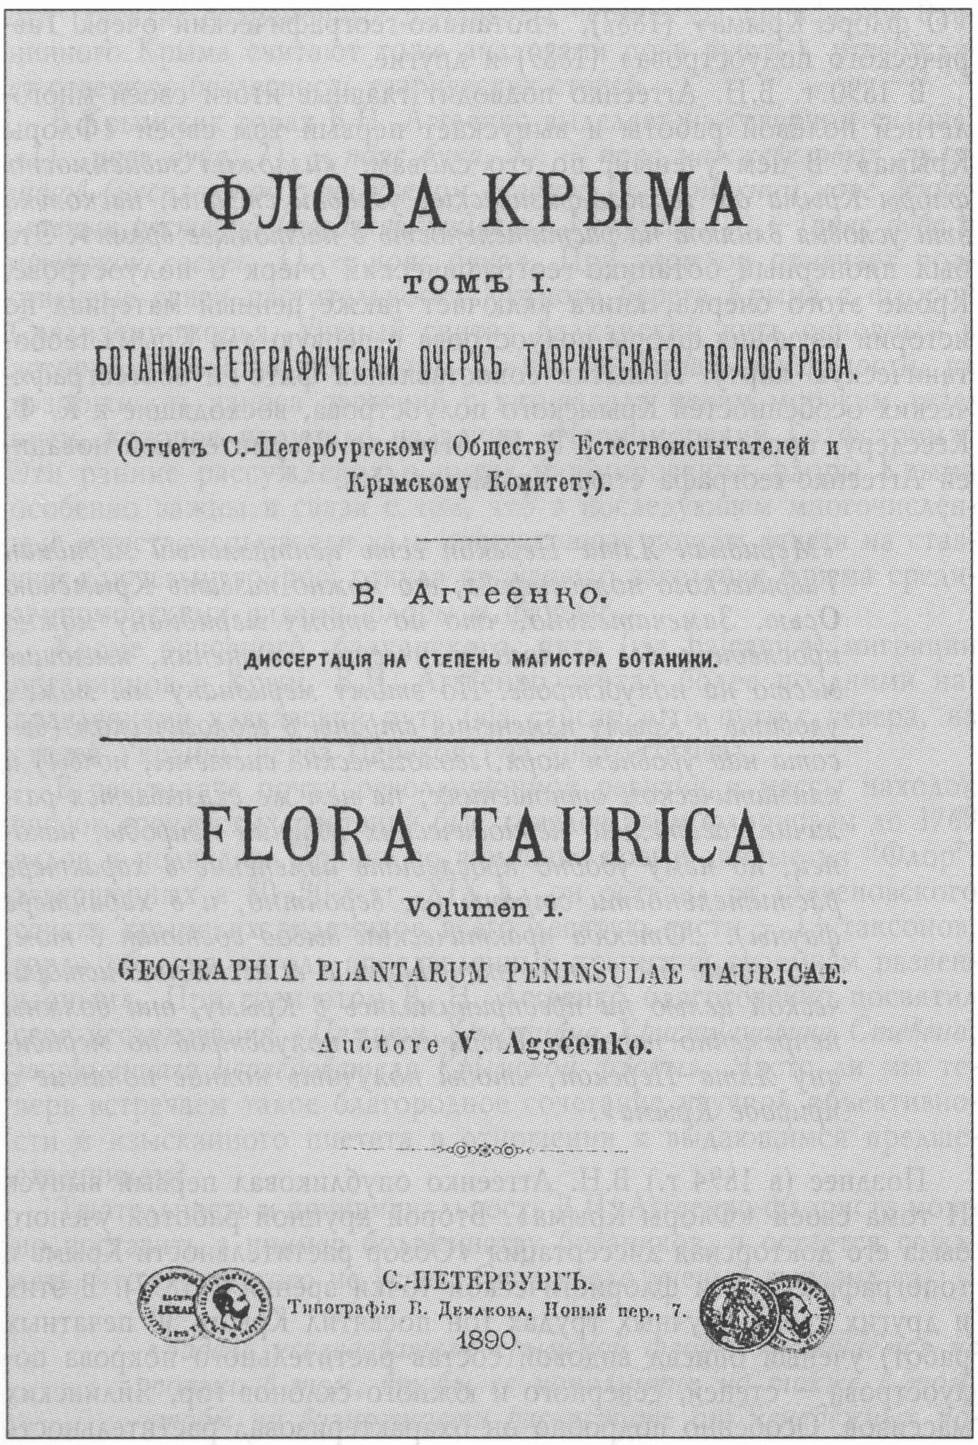 Титульный лист «Флоры...» В. H. Аггеенко (1890 г.)